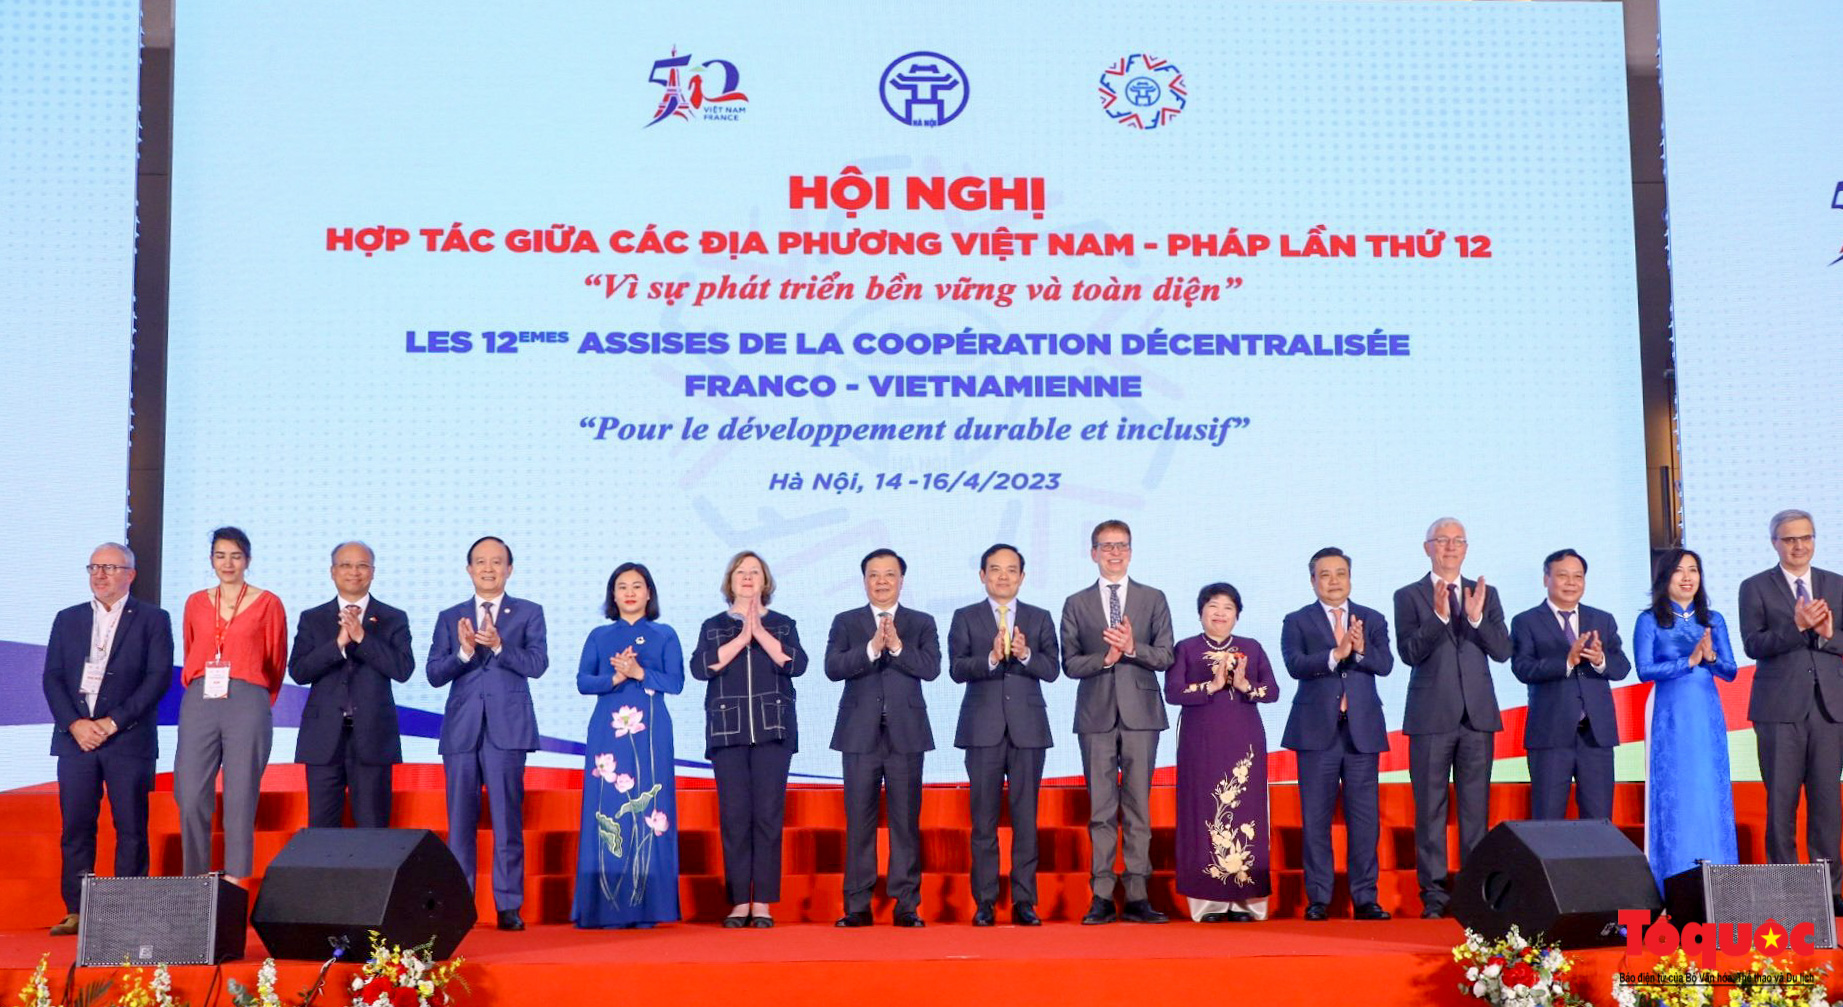 Chùm ảnh: Khai mạc Hội nghị hợp tác giữa các địa phương Việt Nam và Pháp lần thứ 12 - Ảnh 16.